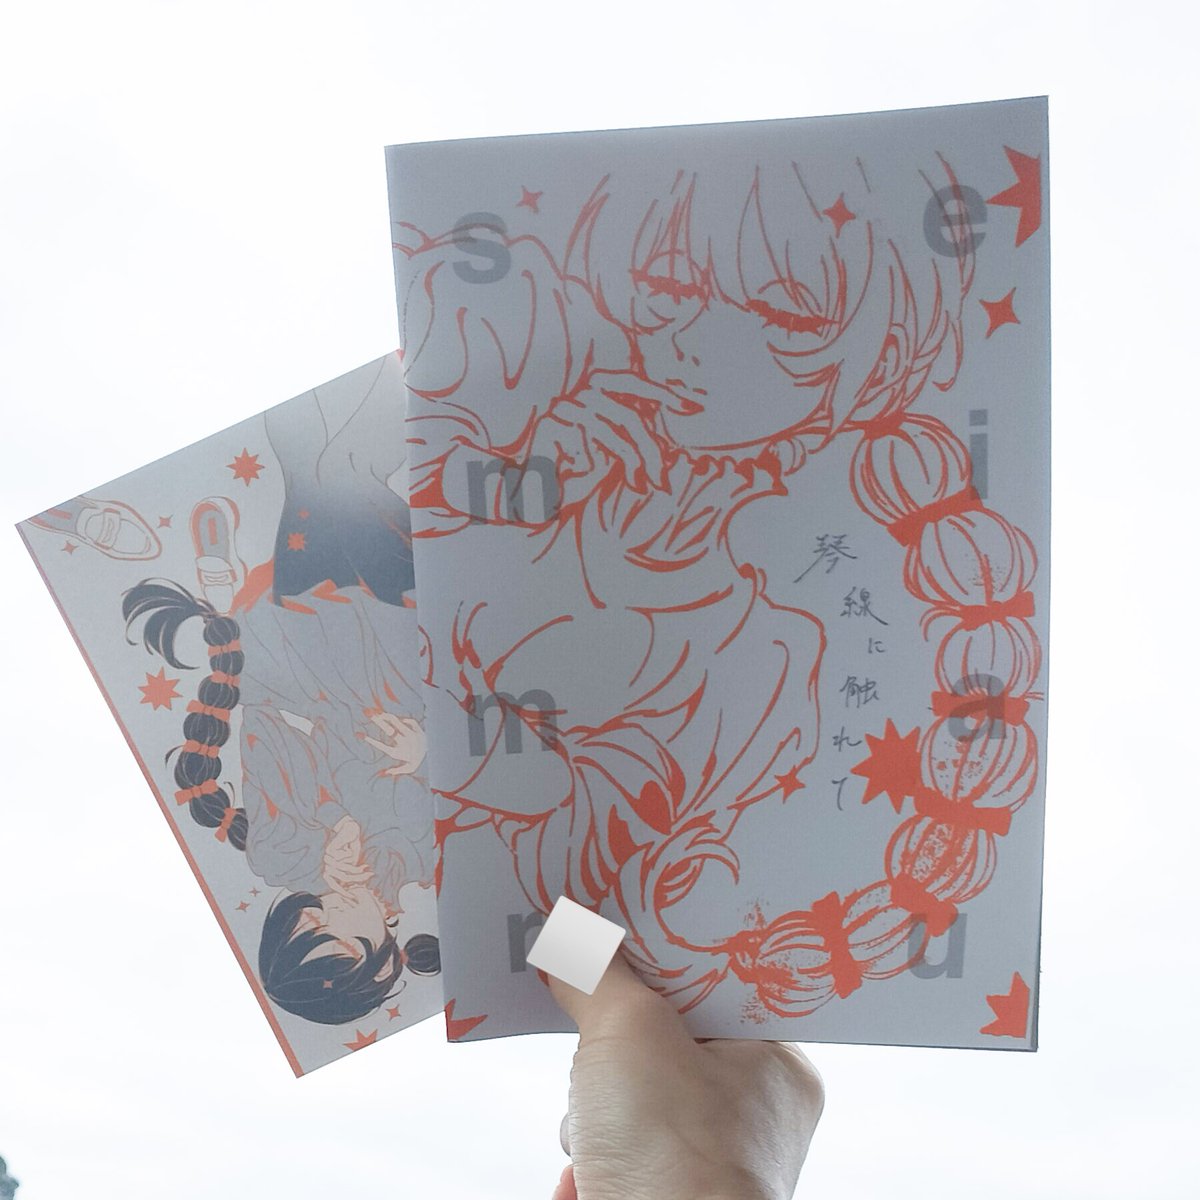 戦利品01
semimaruさん（@semimaru01）のイラスト集。終了前に無事get
#関西コミティア69